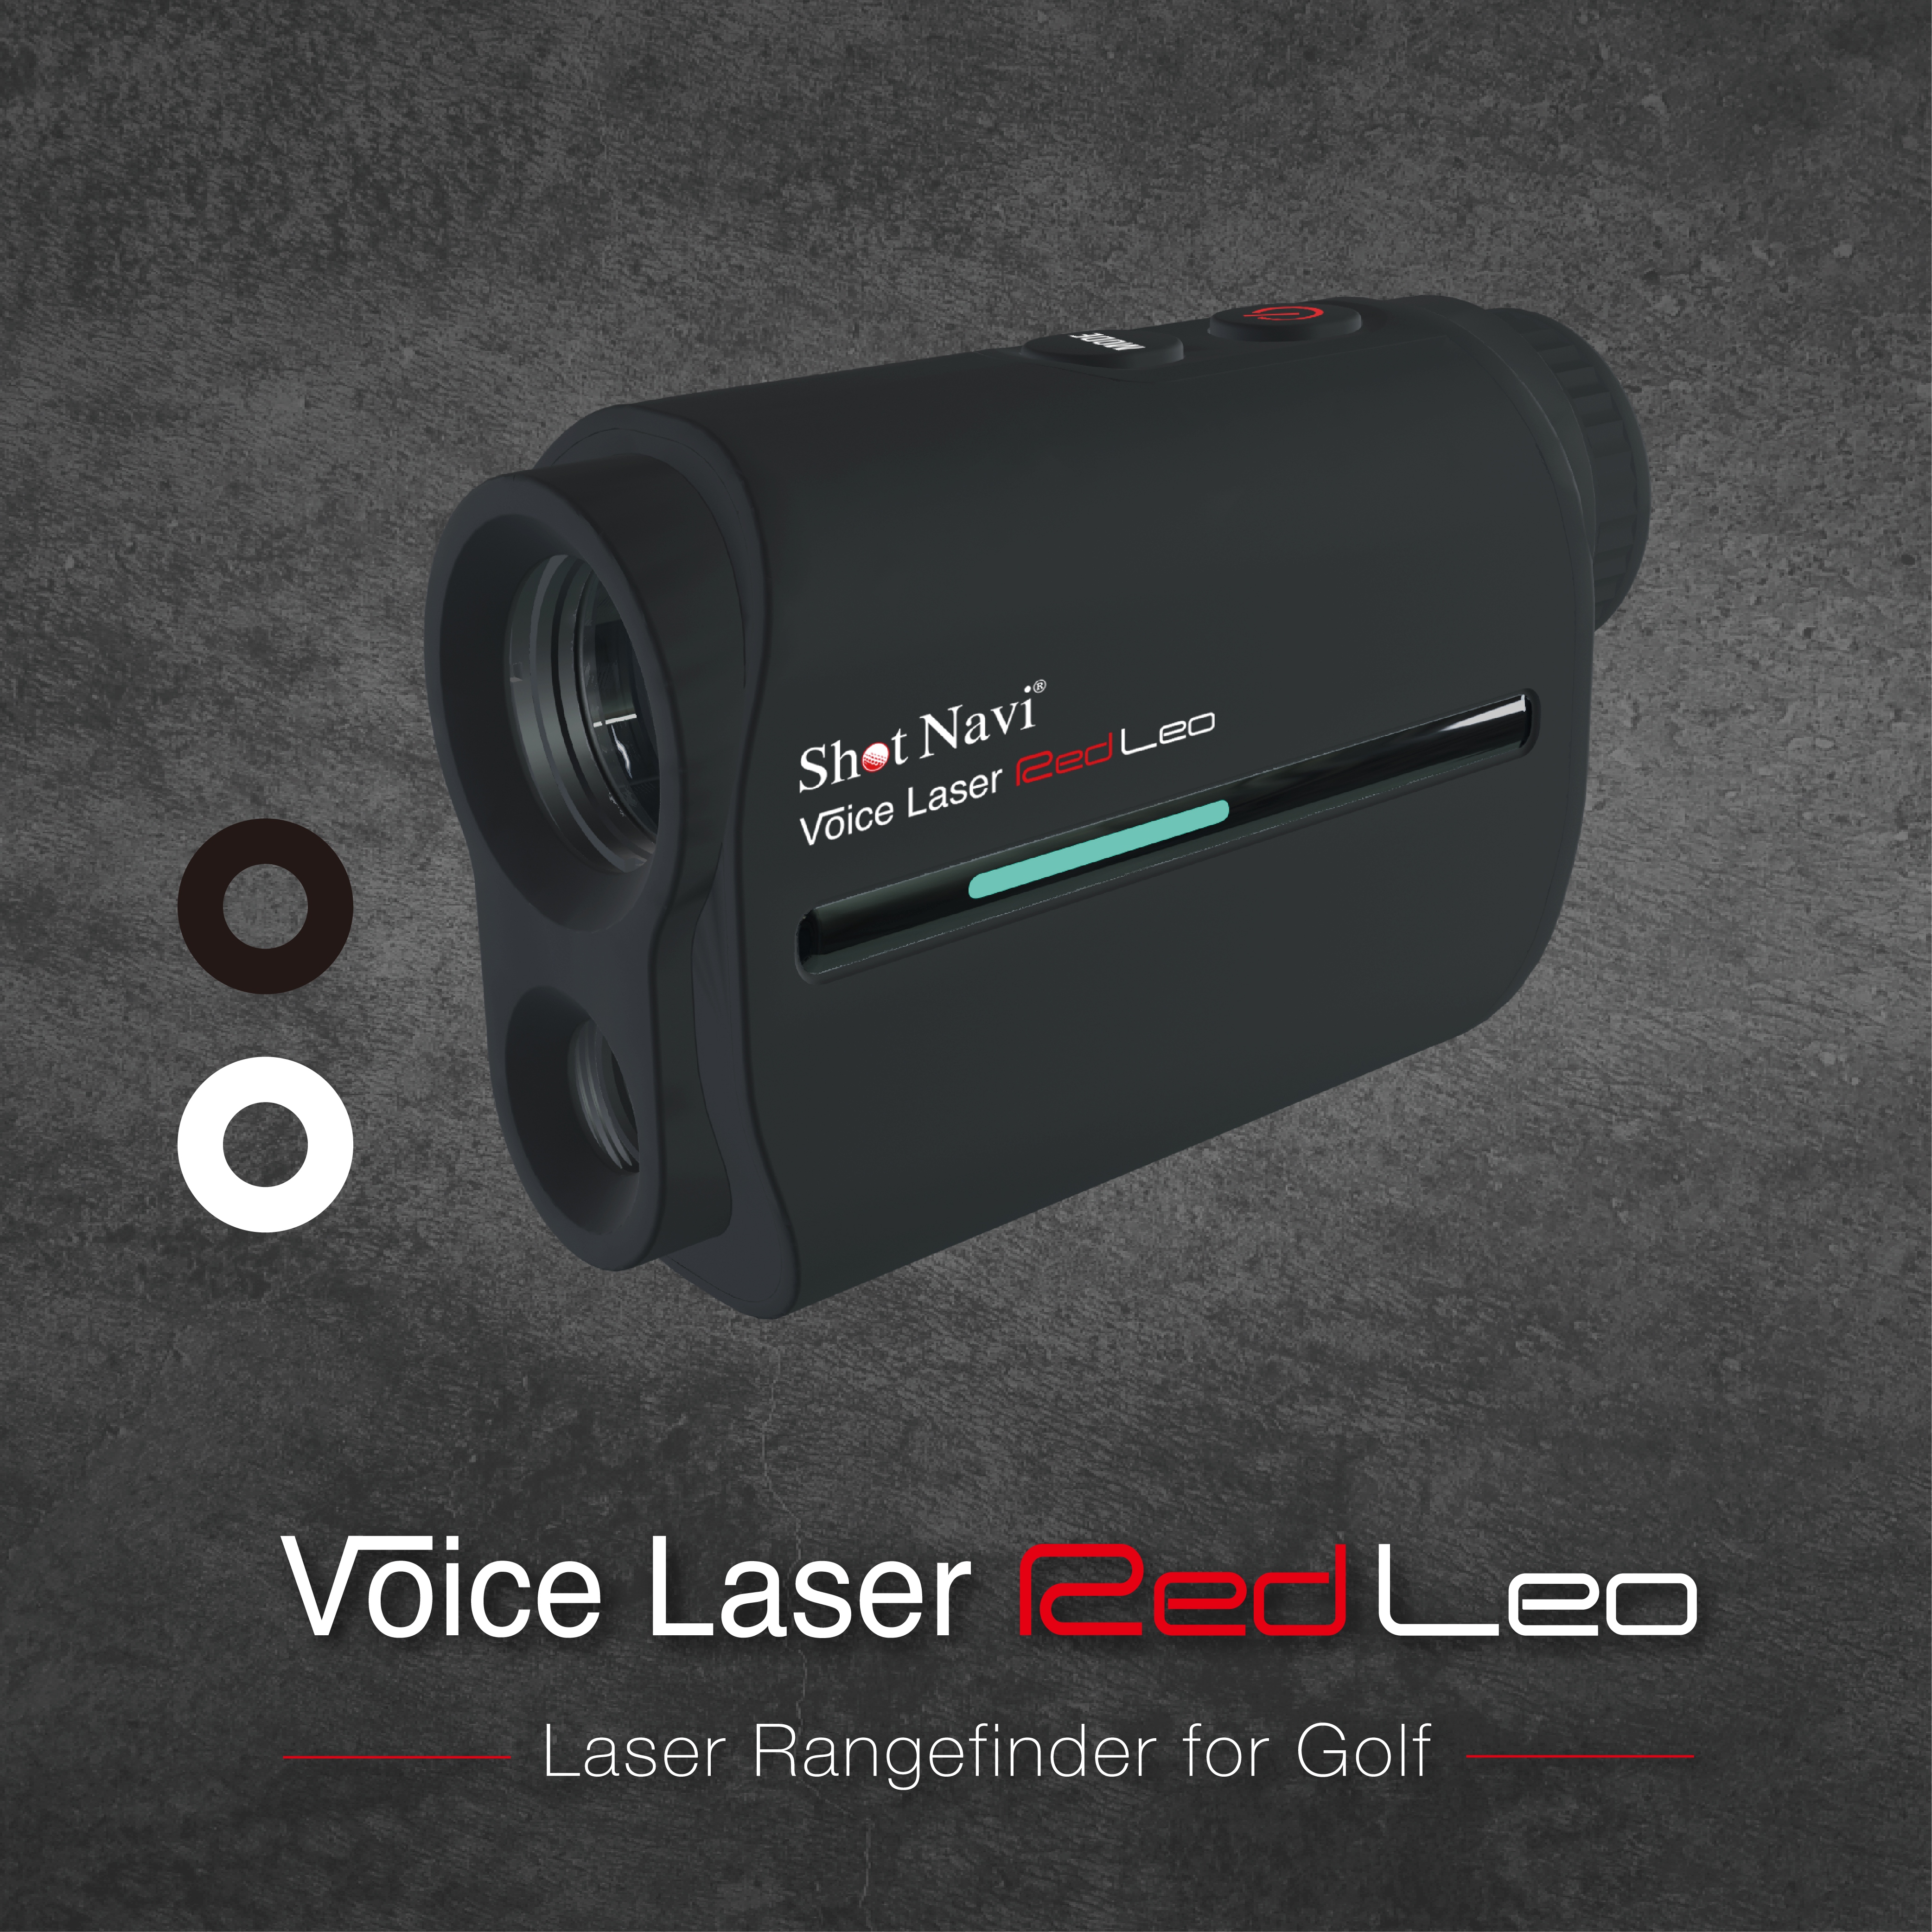 Shot Navi Voice Laser Red Leo-(炫白&黑耀)